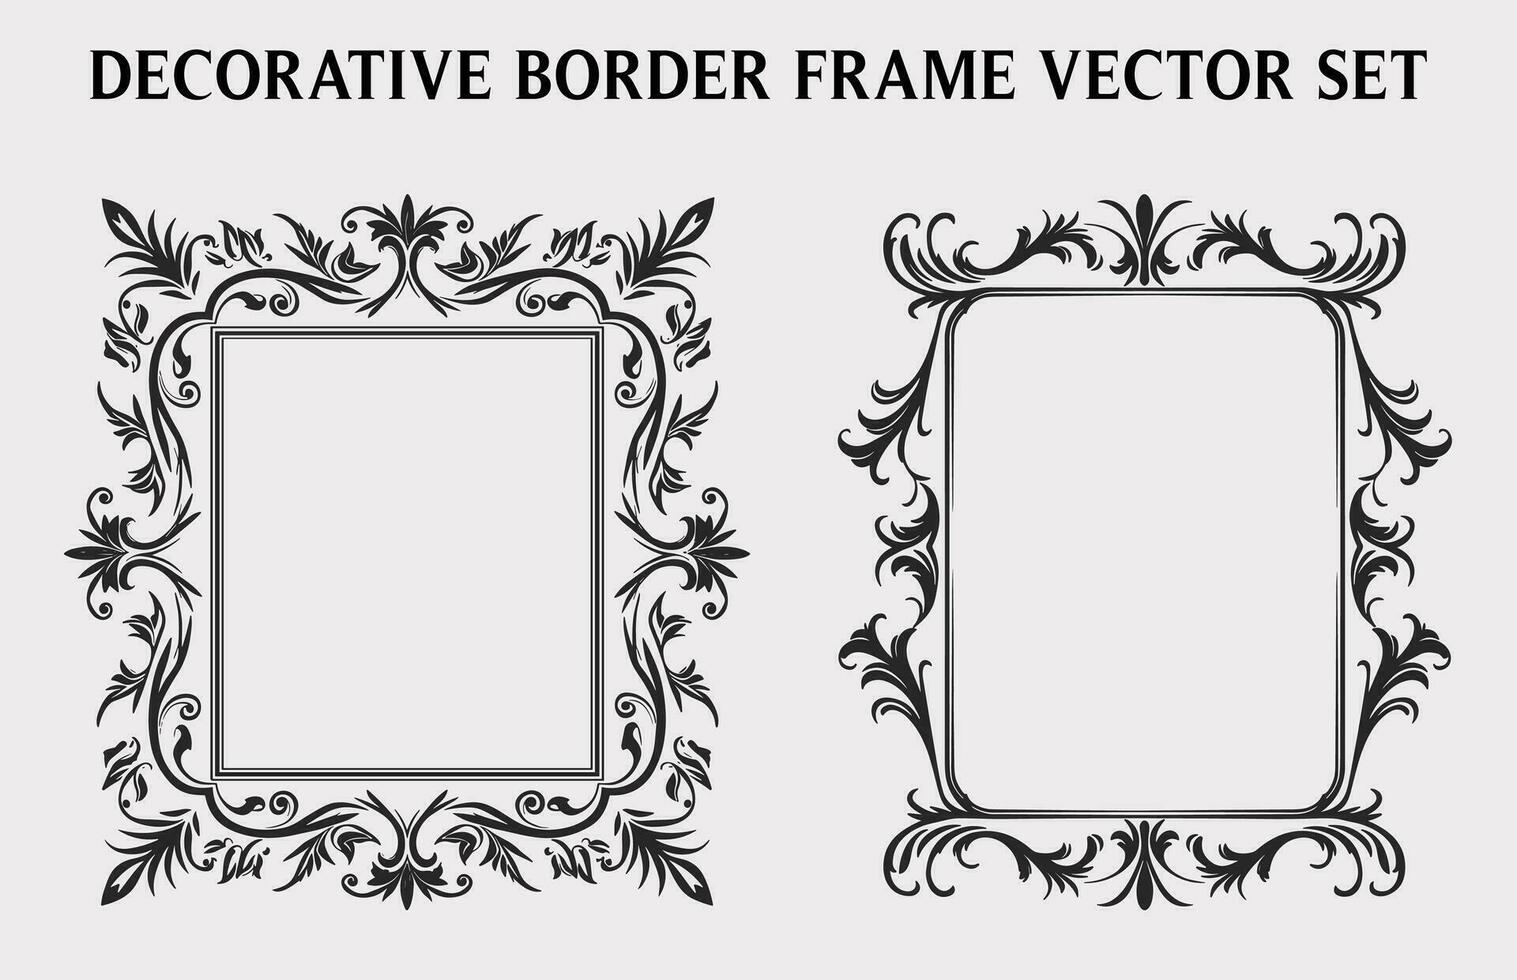 Clásico decorativo ornamental rectángulo marco vector colocar, retro vector ornamental fronteras y filigrana floral adornos